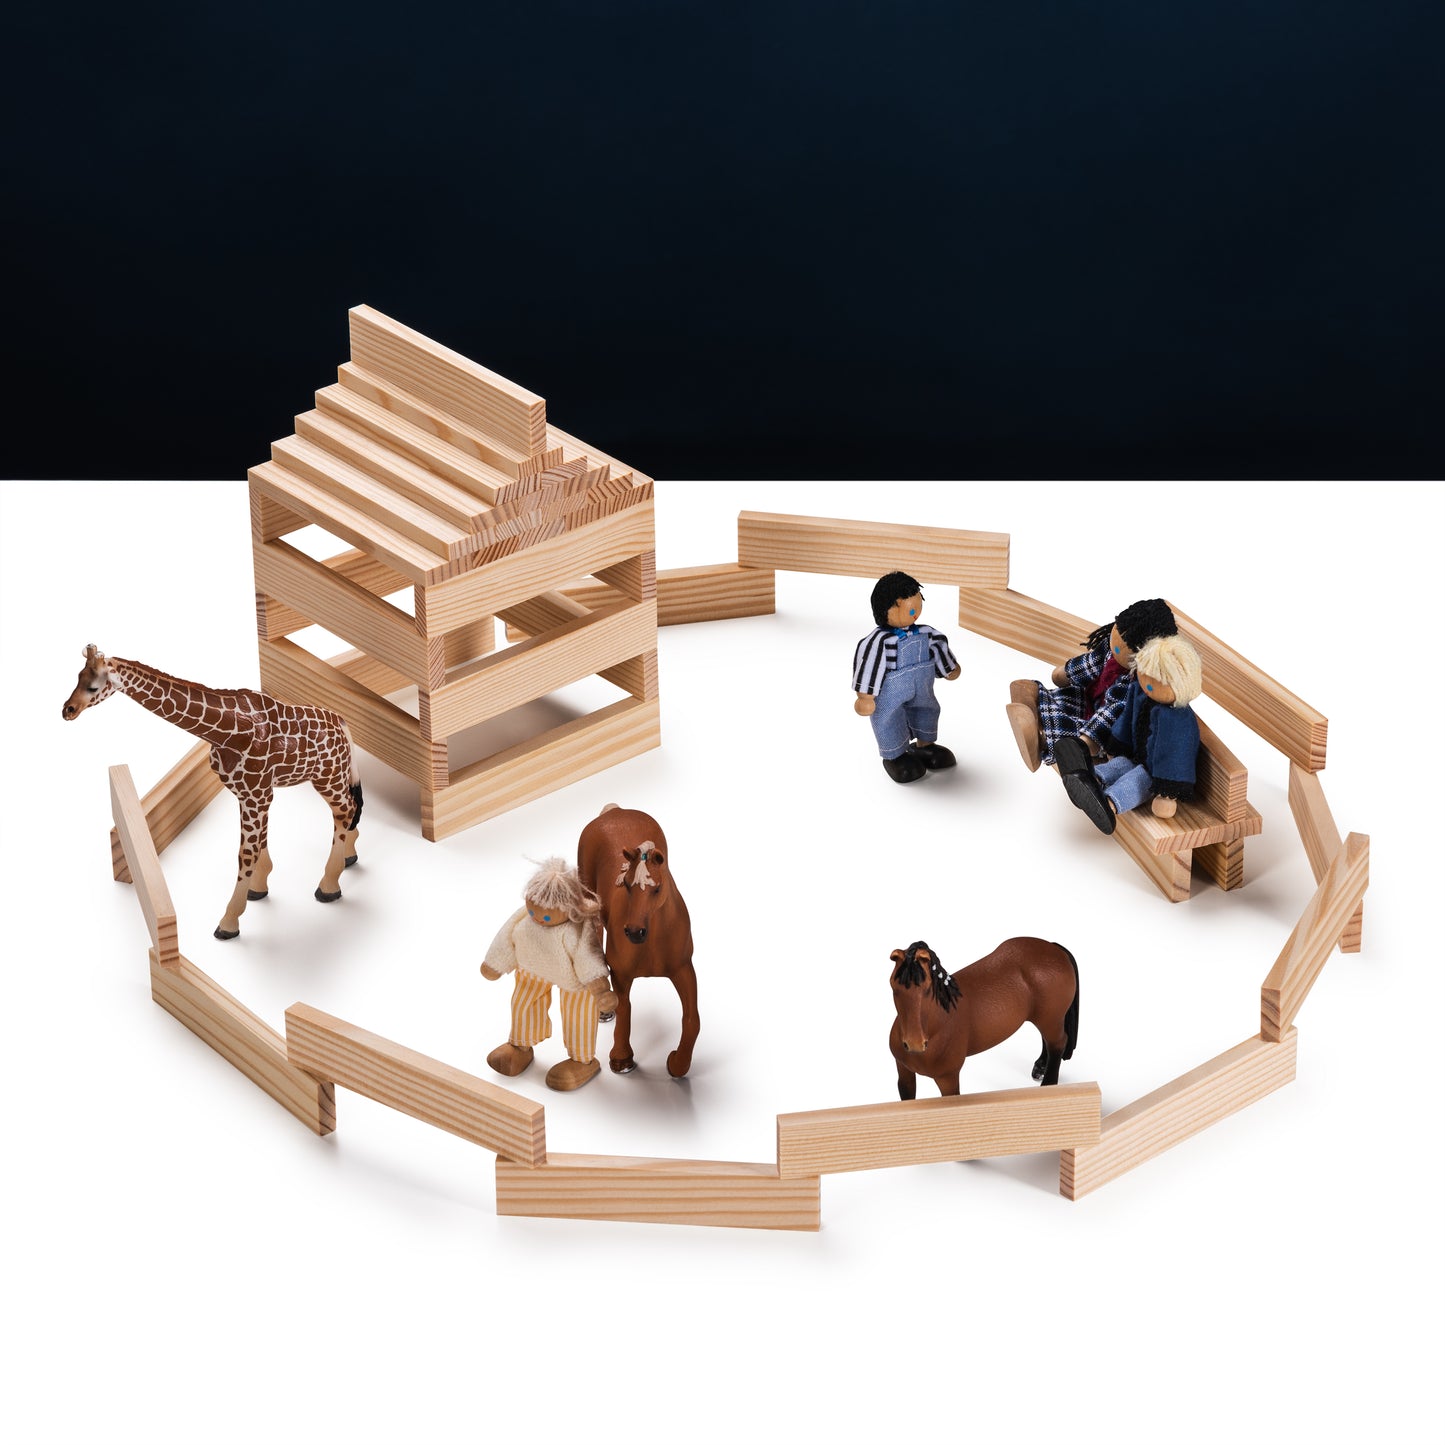 Holzklötze formen ein Gebäude und eine Einfriedung, umgeben von Spielzeugtieren und -figuren auf dunklem Hintergrund.